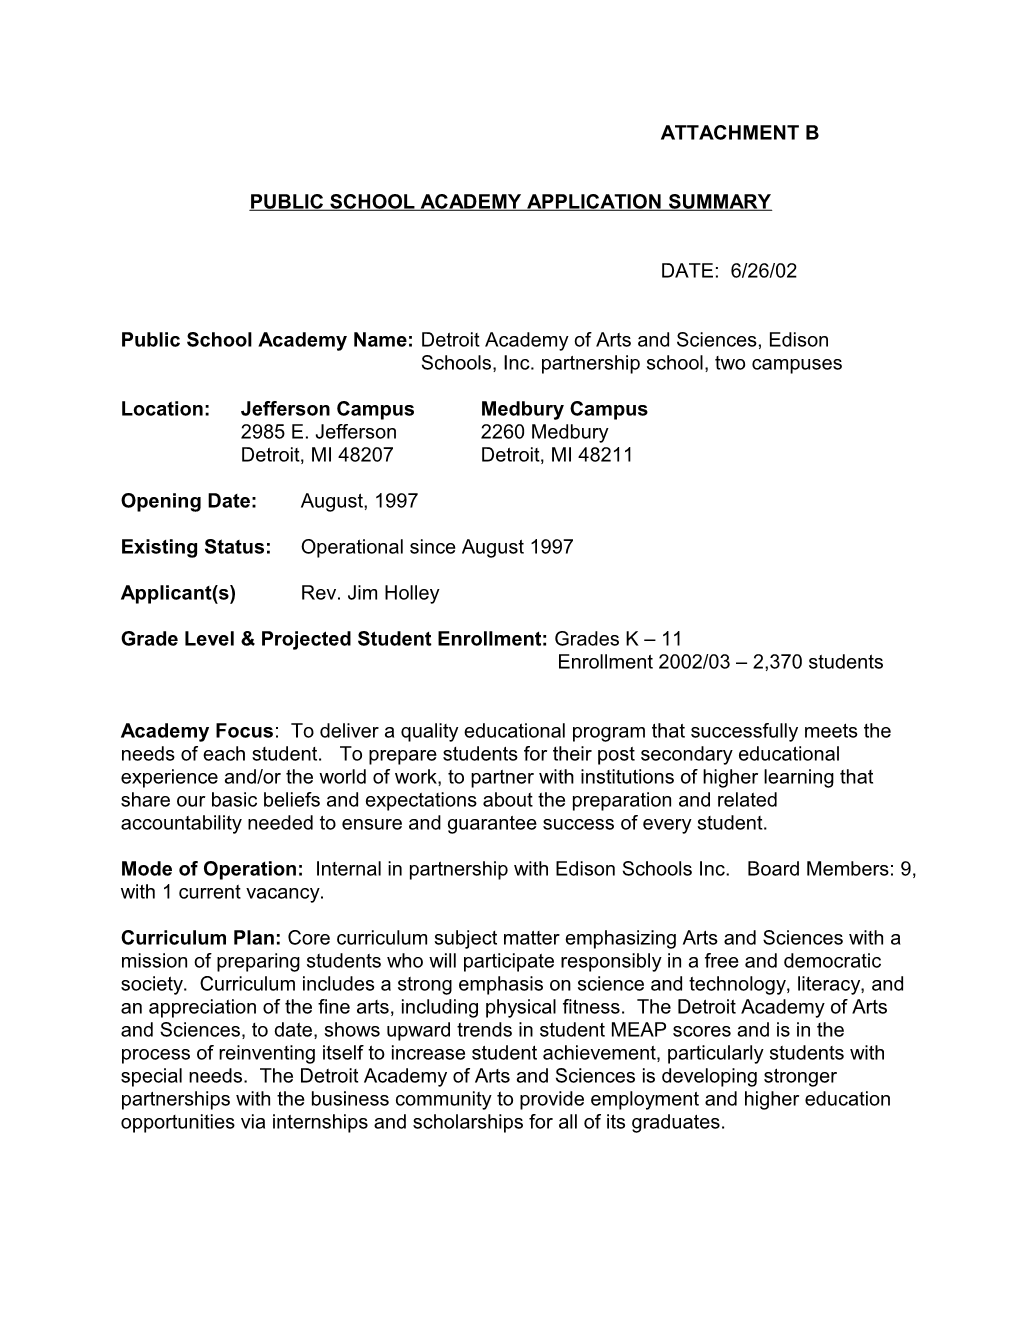 Public School Academy Application Summary